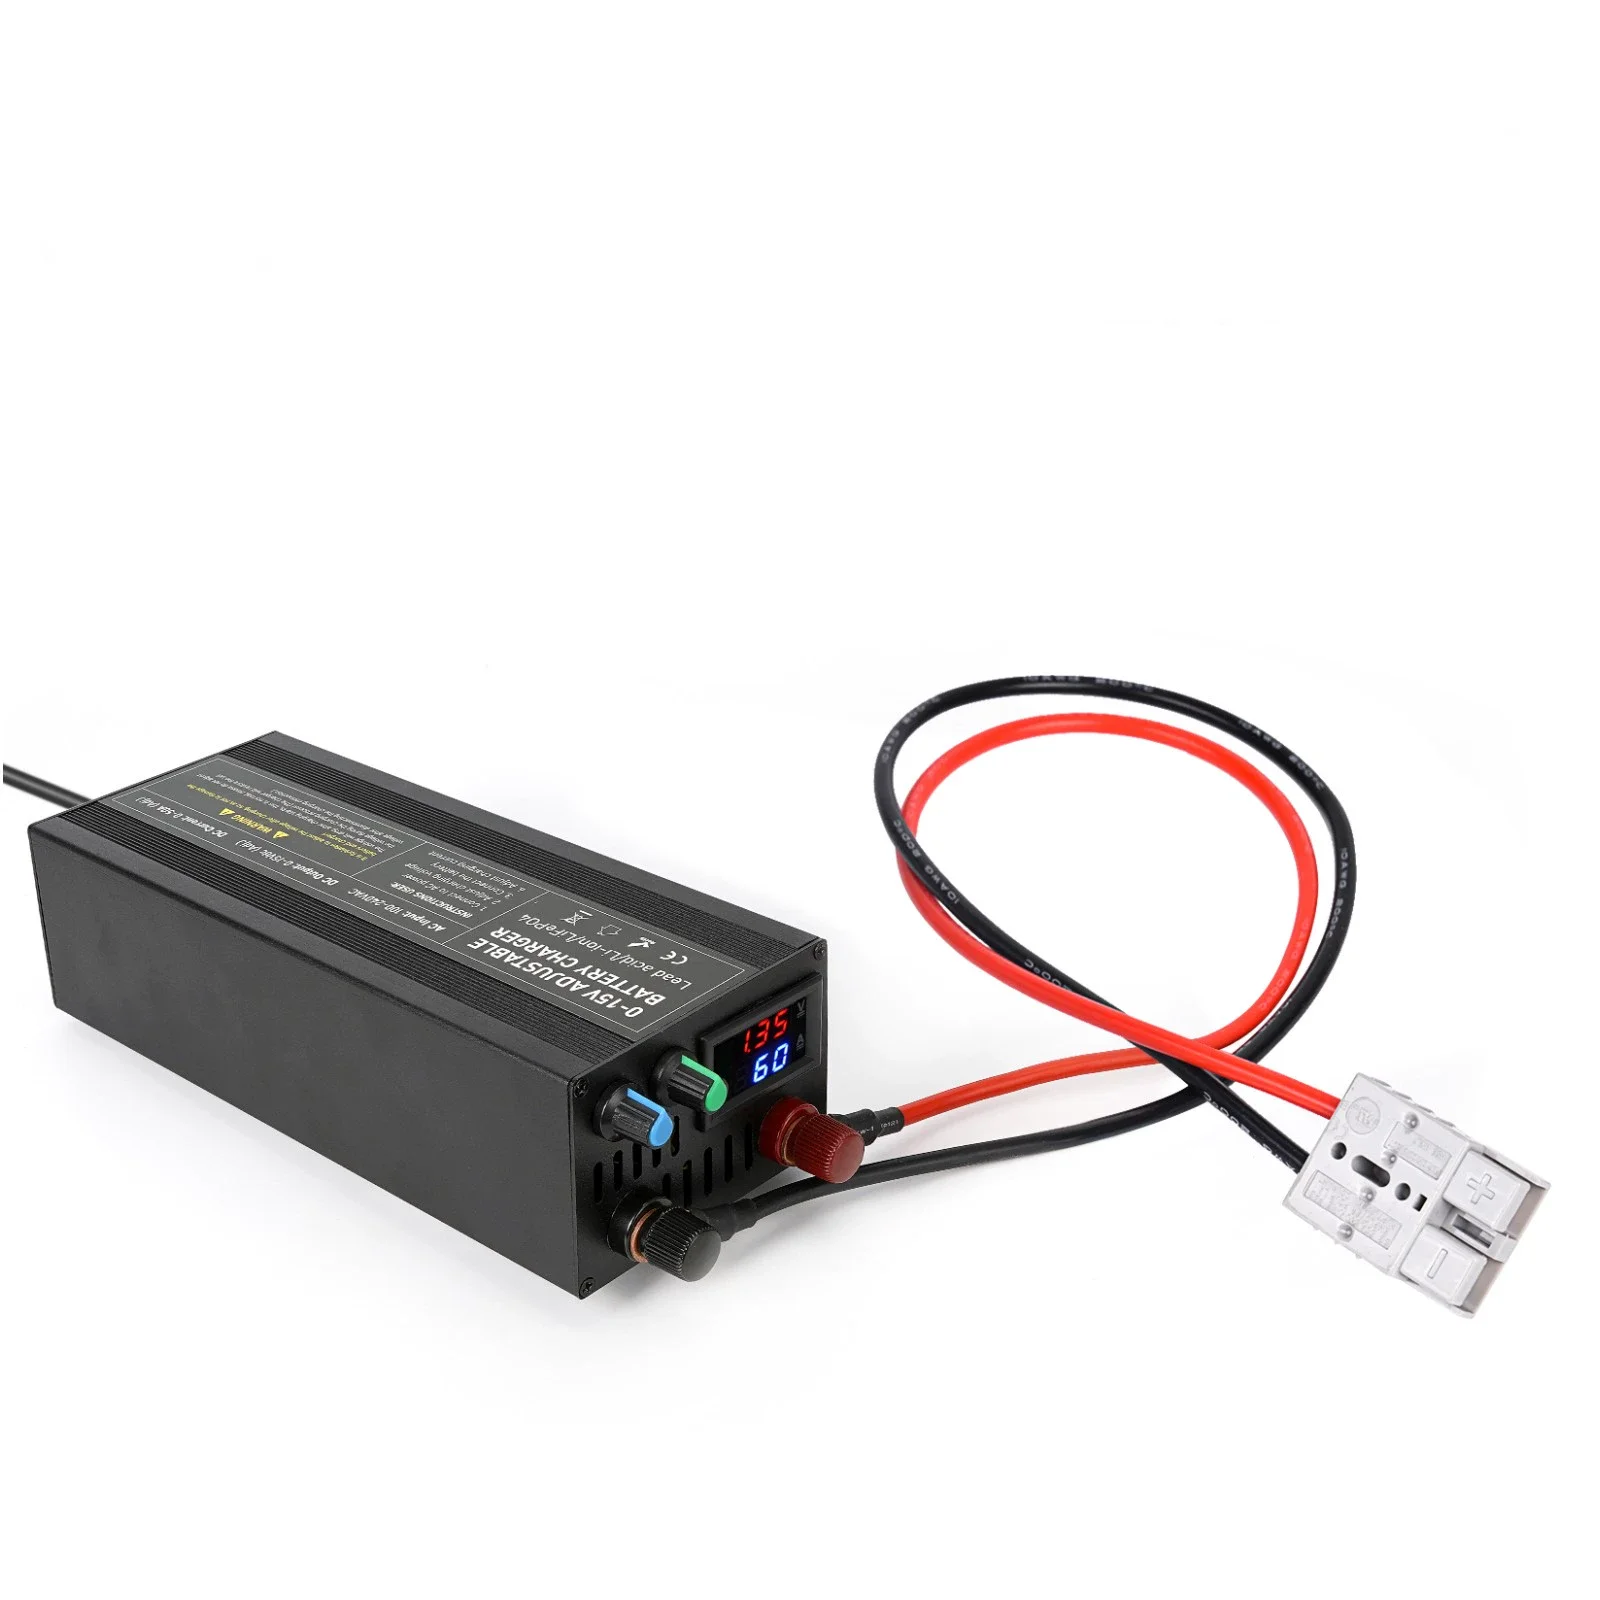 

DDP 3S 4S 0-15v voltage current adjustable 50A 60A 85A fast battery charger 12V 12.6V 14.6V for vehicle